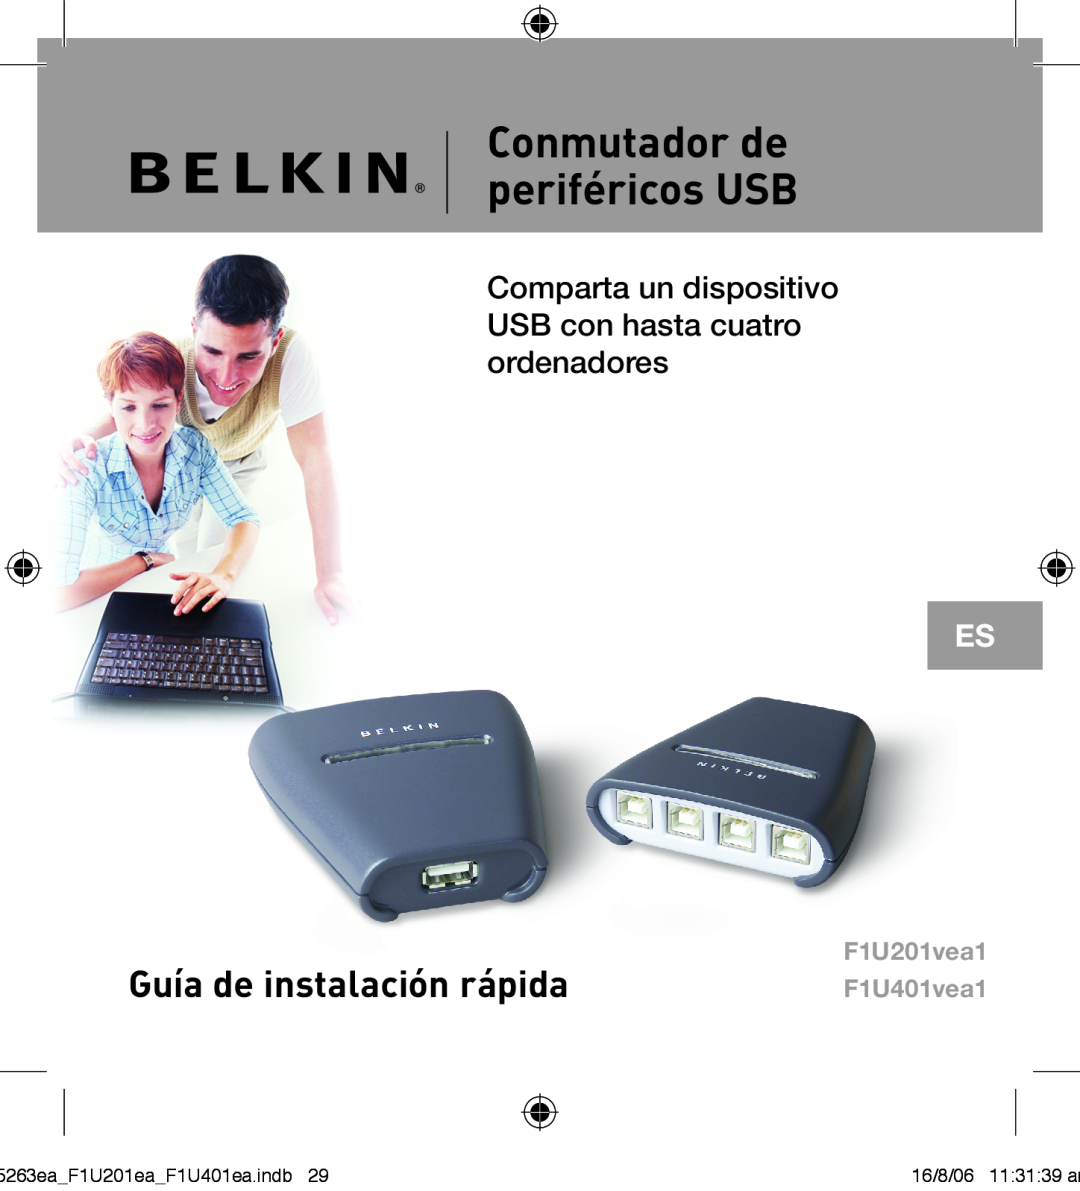 Belkin F1U201VEA1 manual Conmutador de periféricos USB, Guía de instalación rápida, F1U201vea1 F1U401vea1 